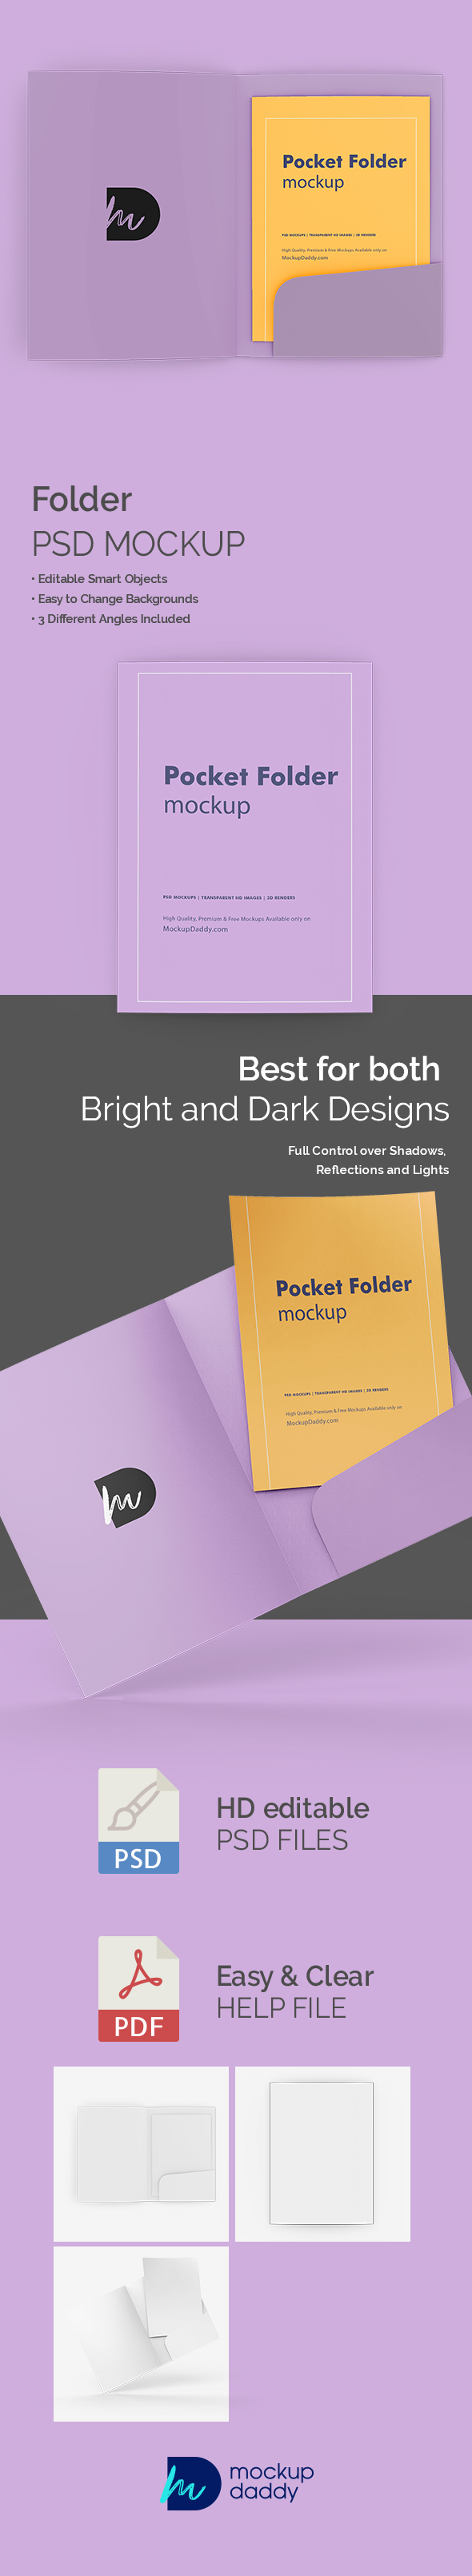 Pocket-Folder-Mockup-Featured